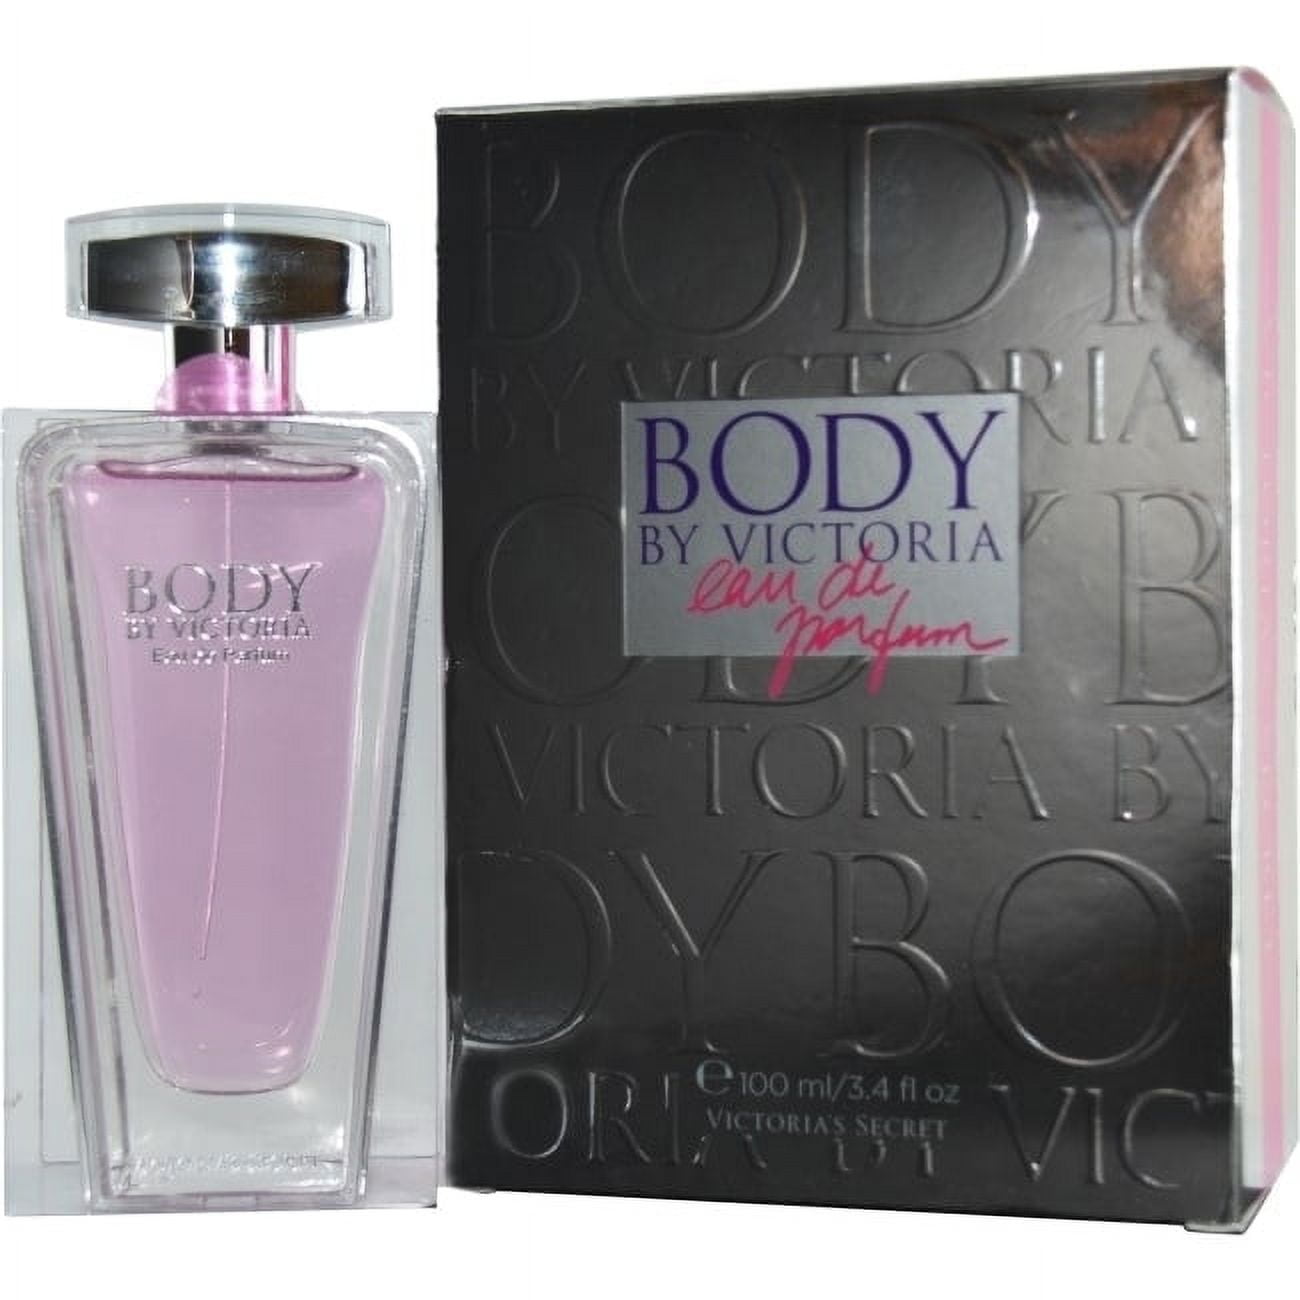 Victoria's Secret Body by Victoria Eau de parfum 3.4 Oz - 2012